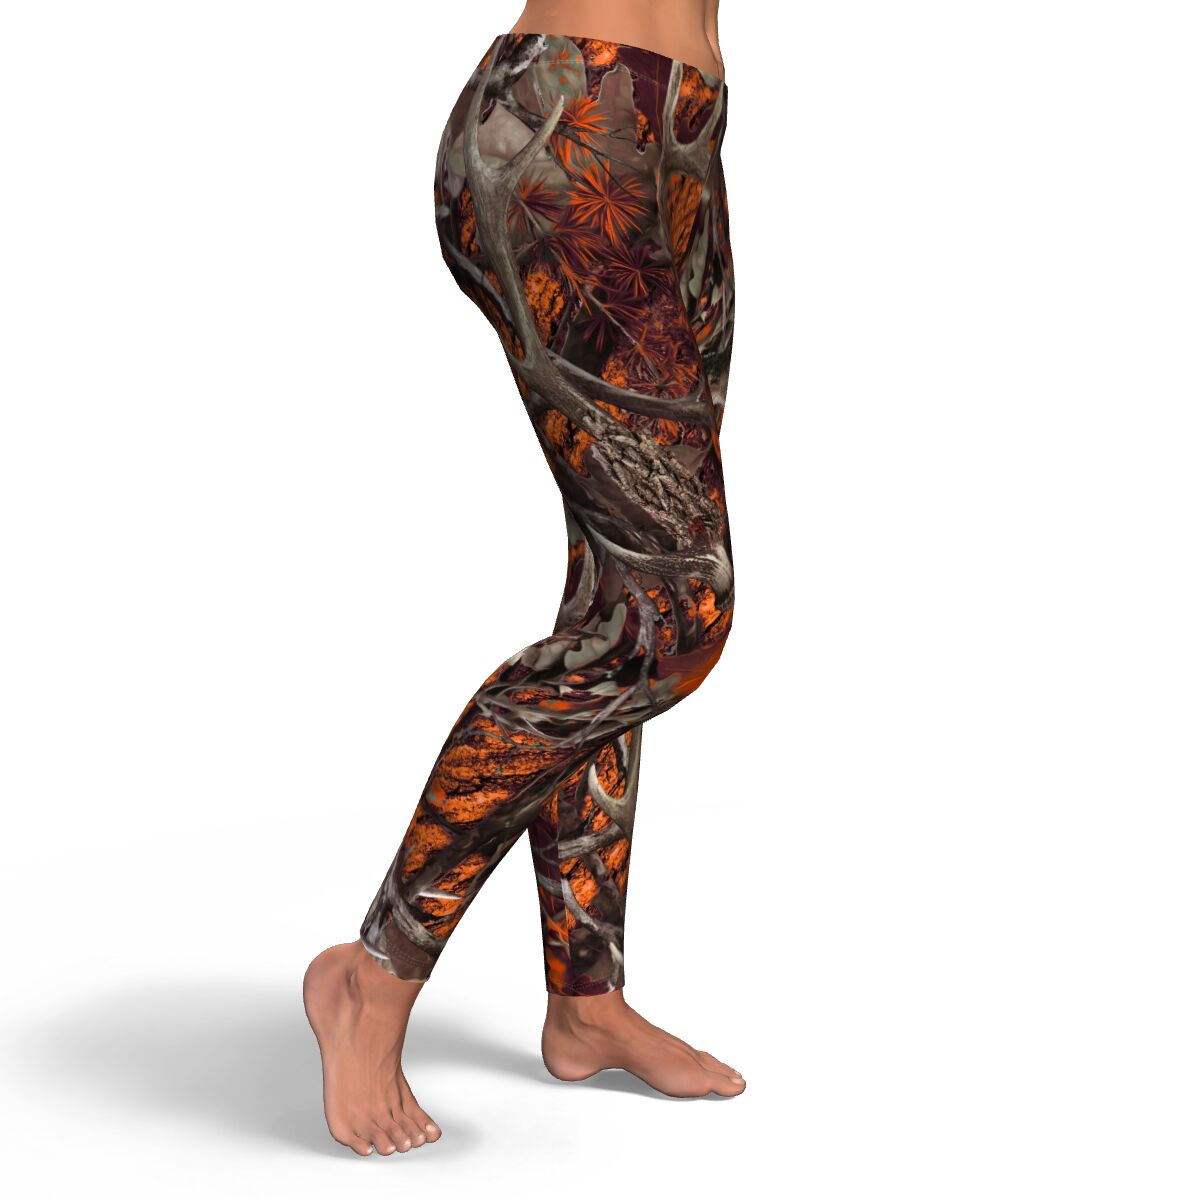 Premium Women's Leggings Multicam Camouflage Leggings Camo Leggings Outfit  Ver.6